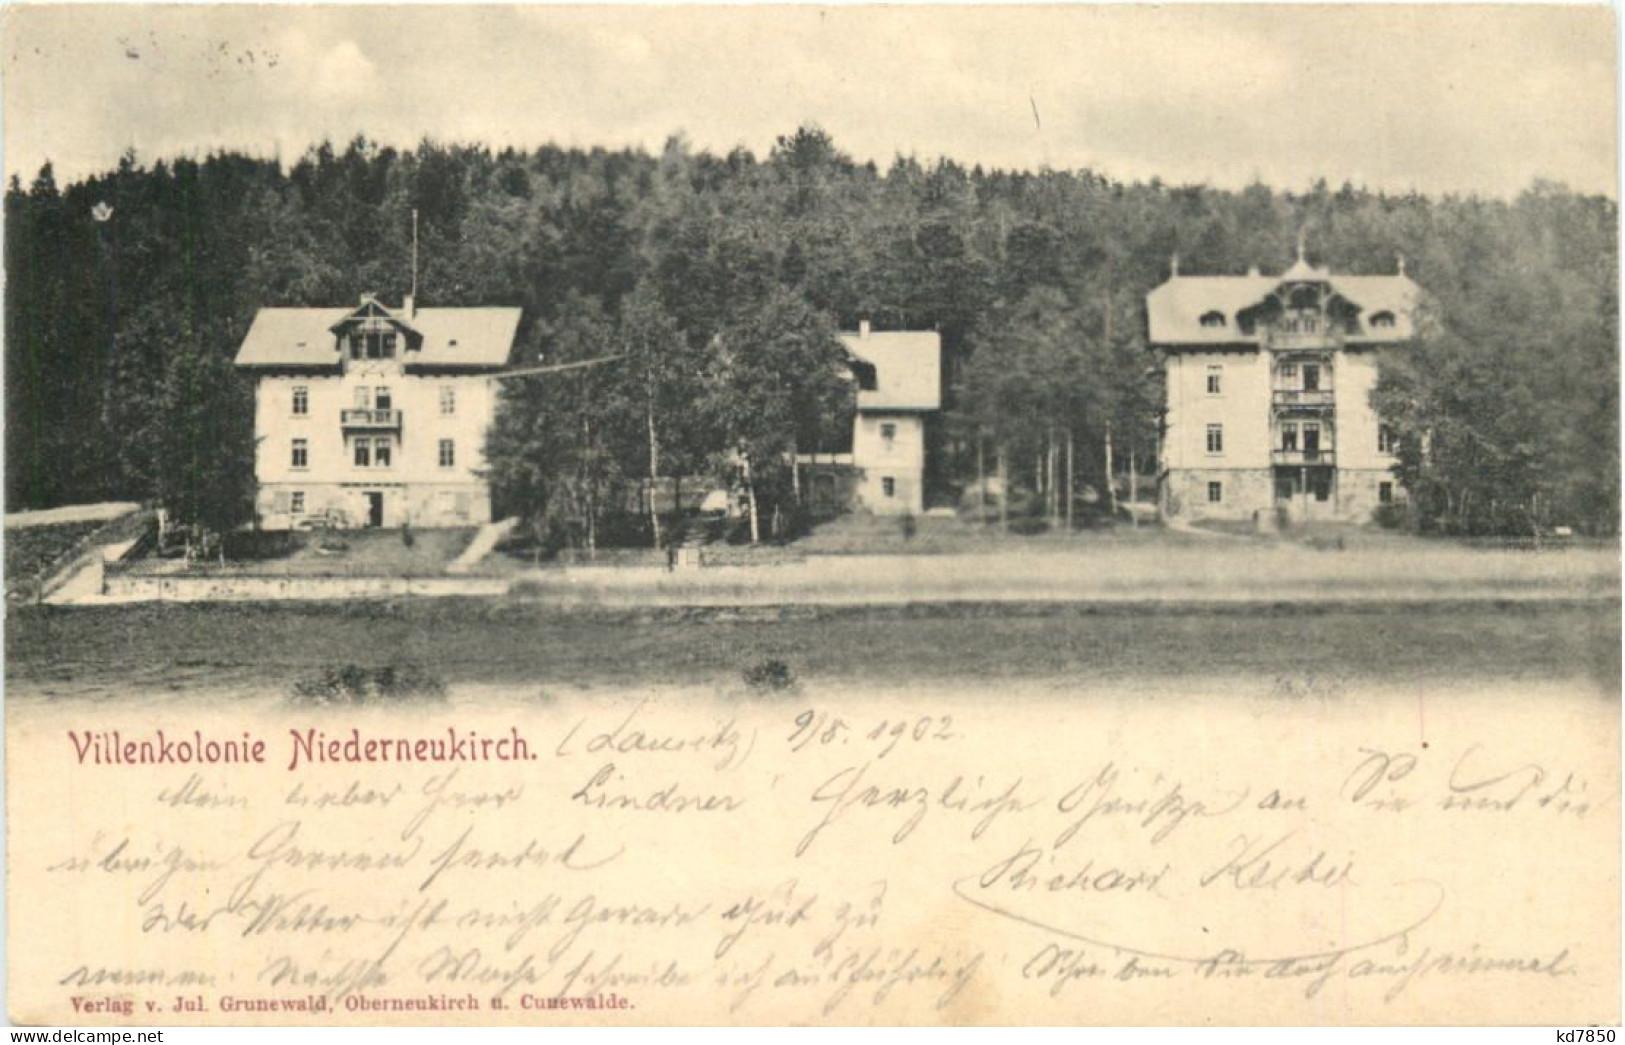 Villenkolonie Niederneukirch - Bautzen